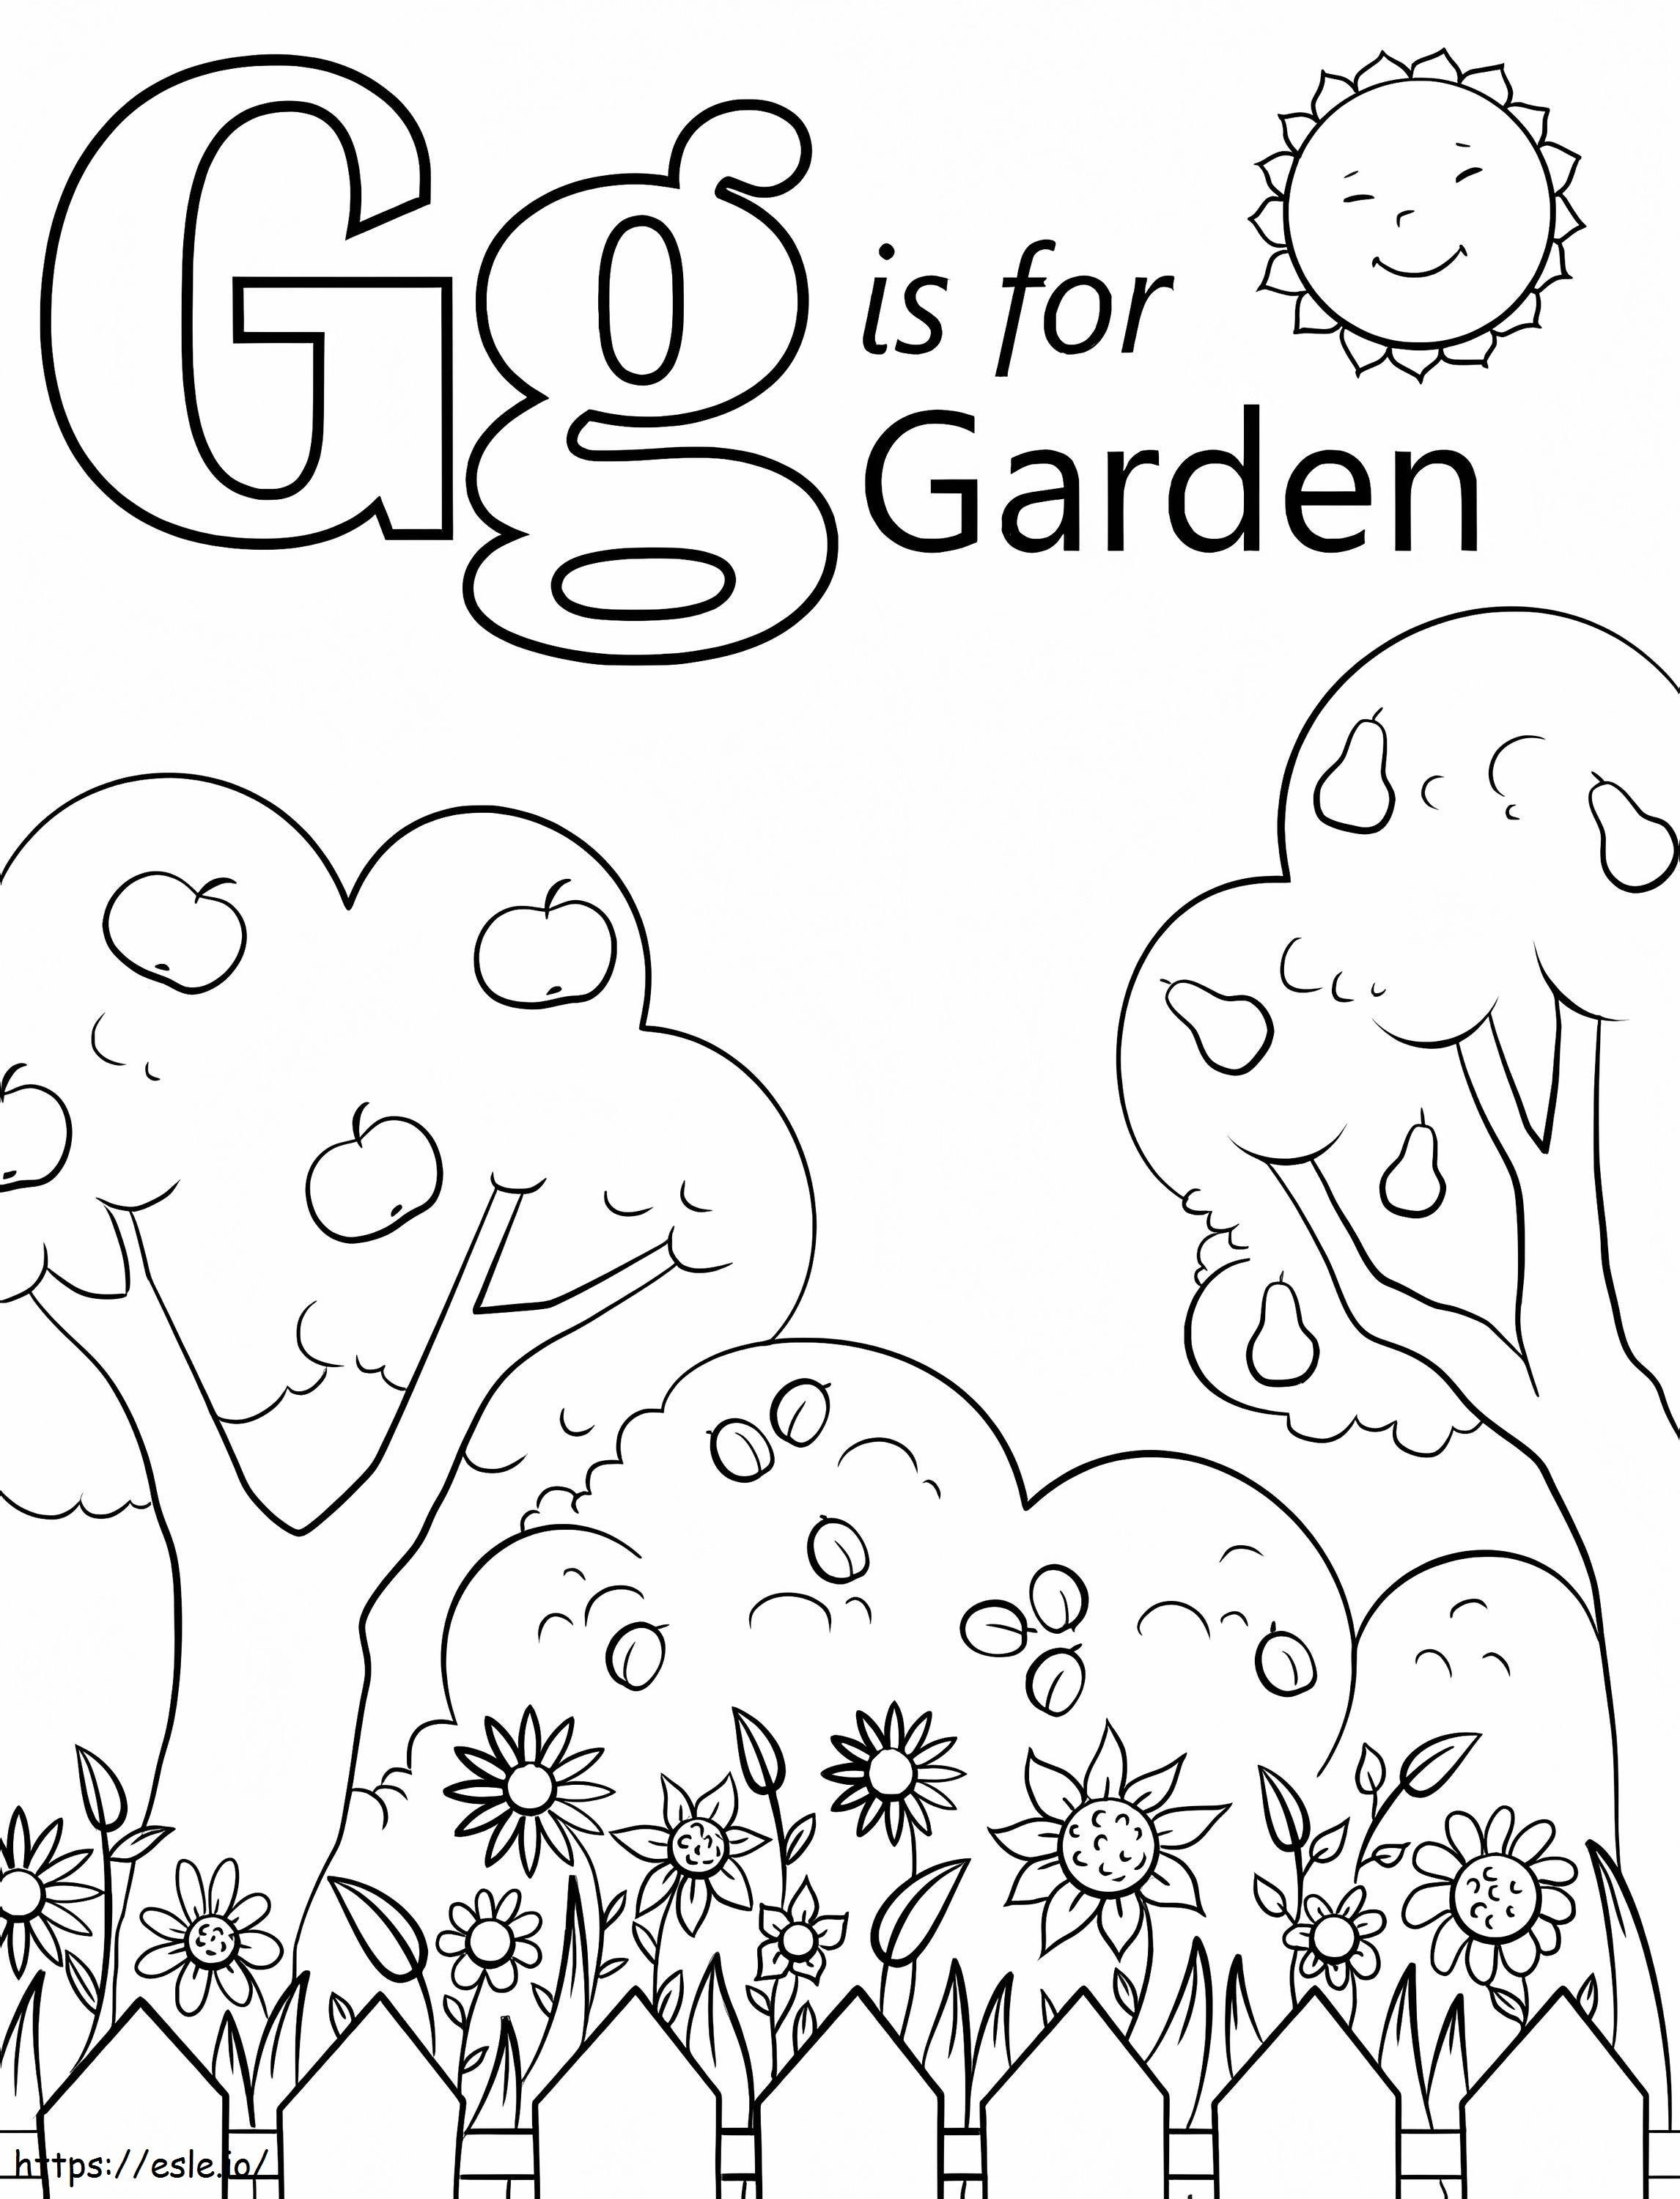 Garden Letra G coloring page